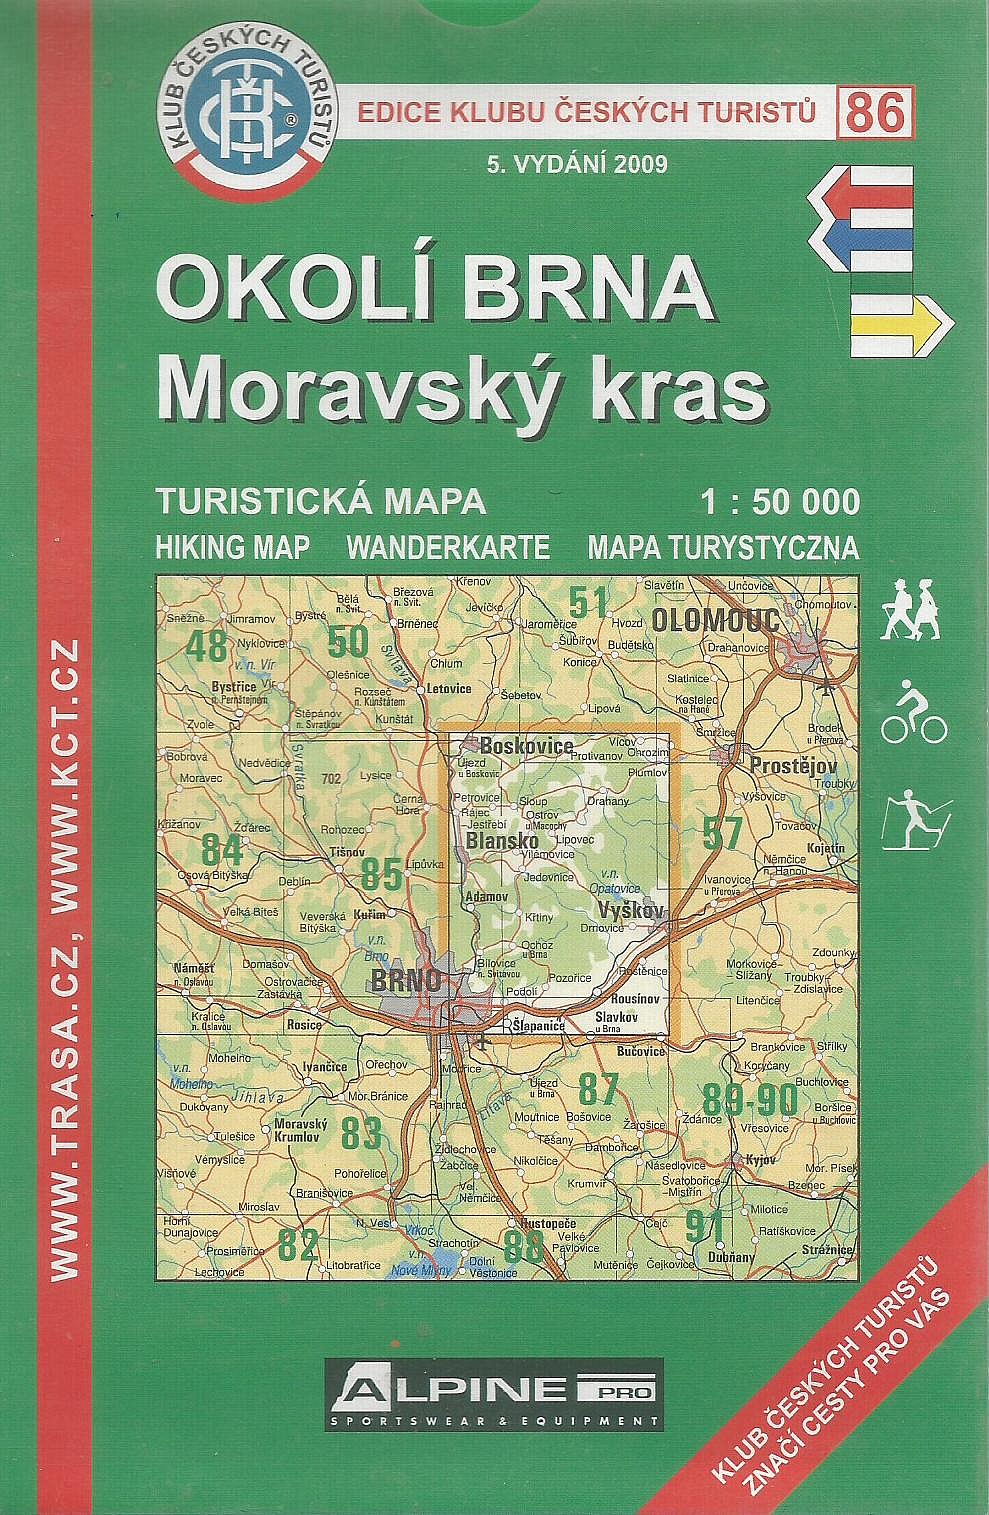 Okolí Brna - Moravský kras